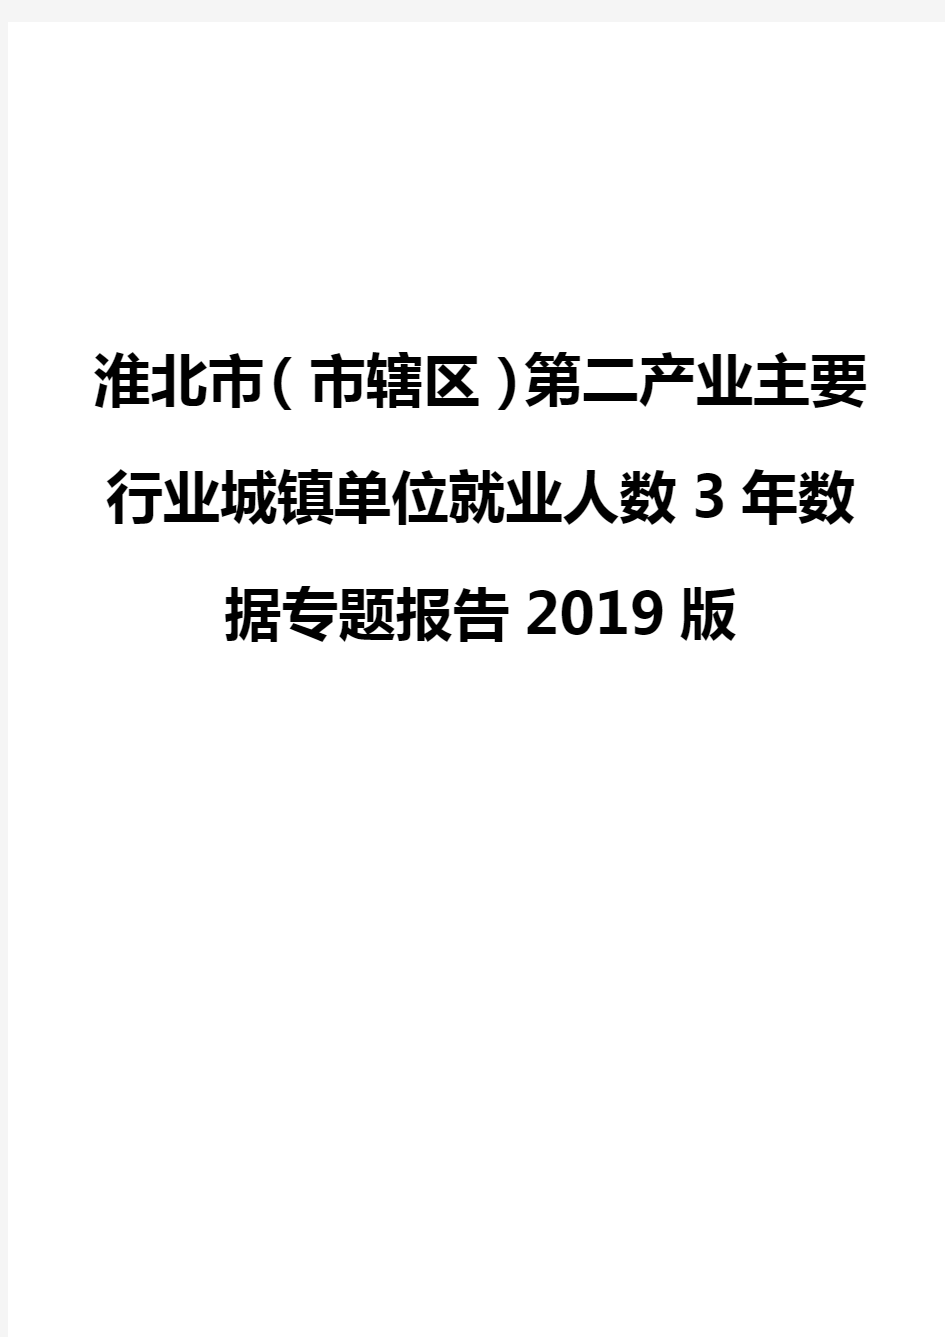 淮北市(市辖区)第二产业主要行业城镇单位就业人数3年数据专题报告2019版